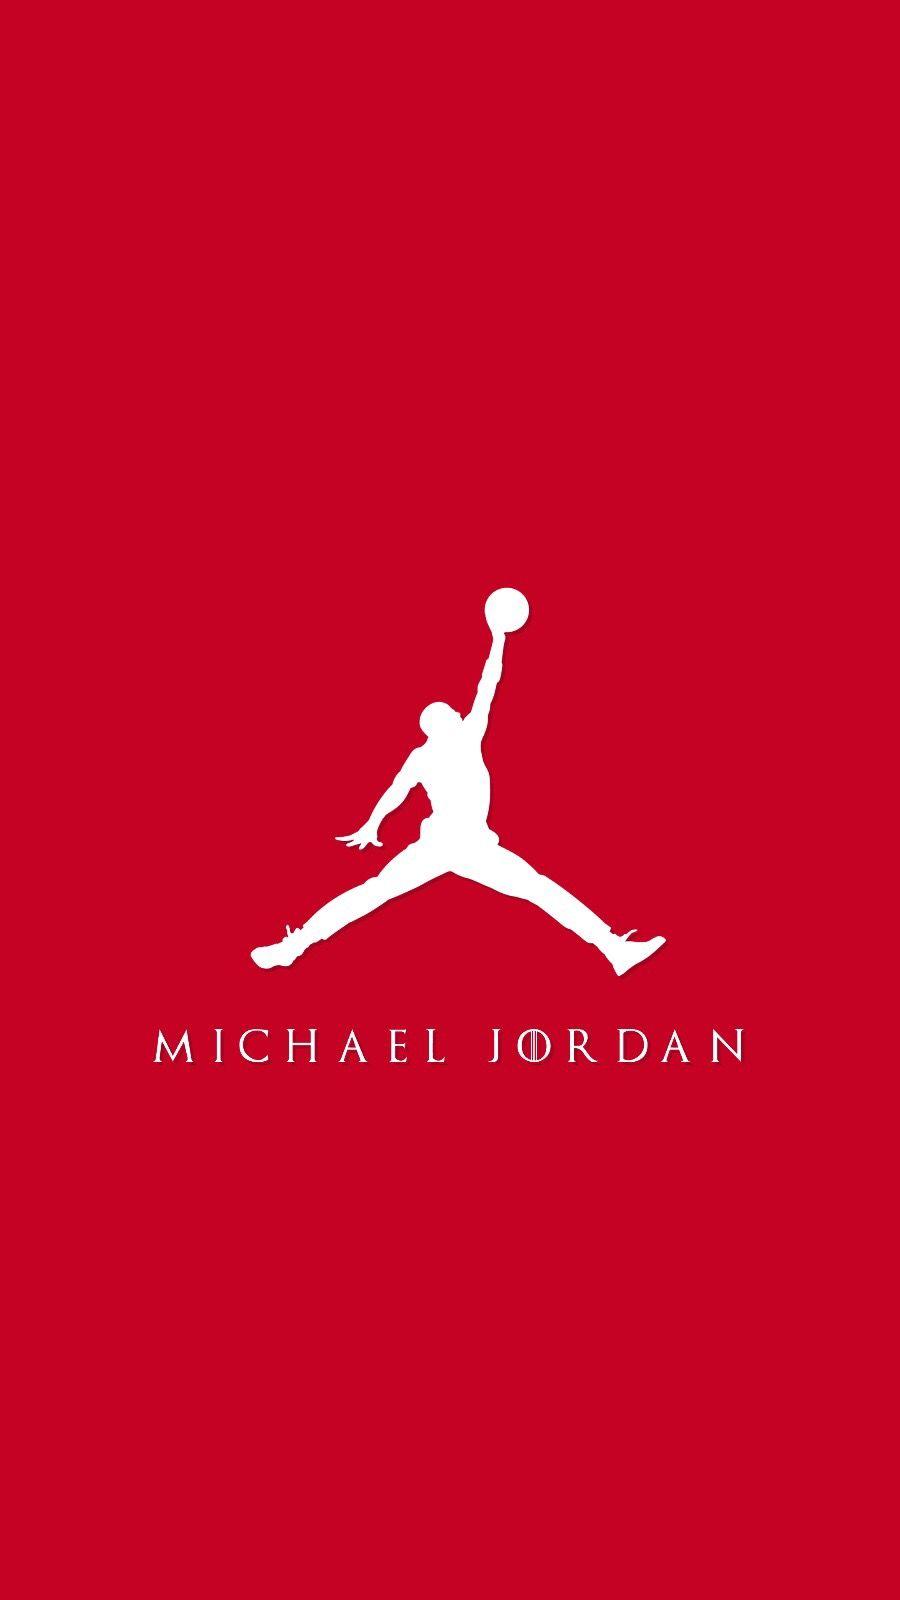 Michael Jordan 4K wallpaper. Duvar kağıtları. Michael